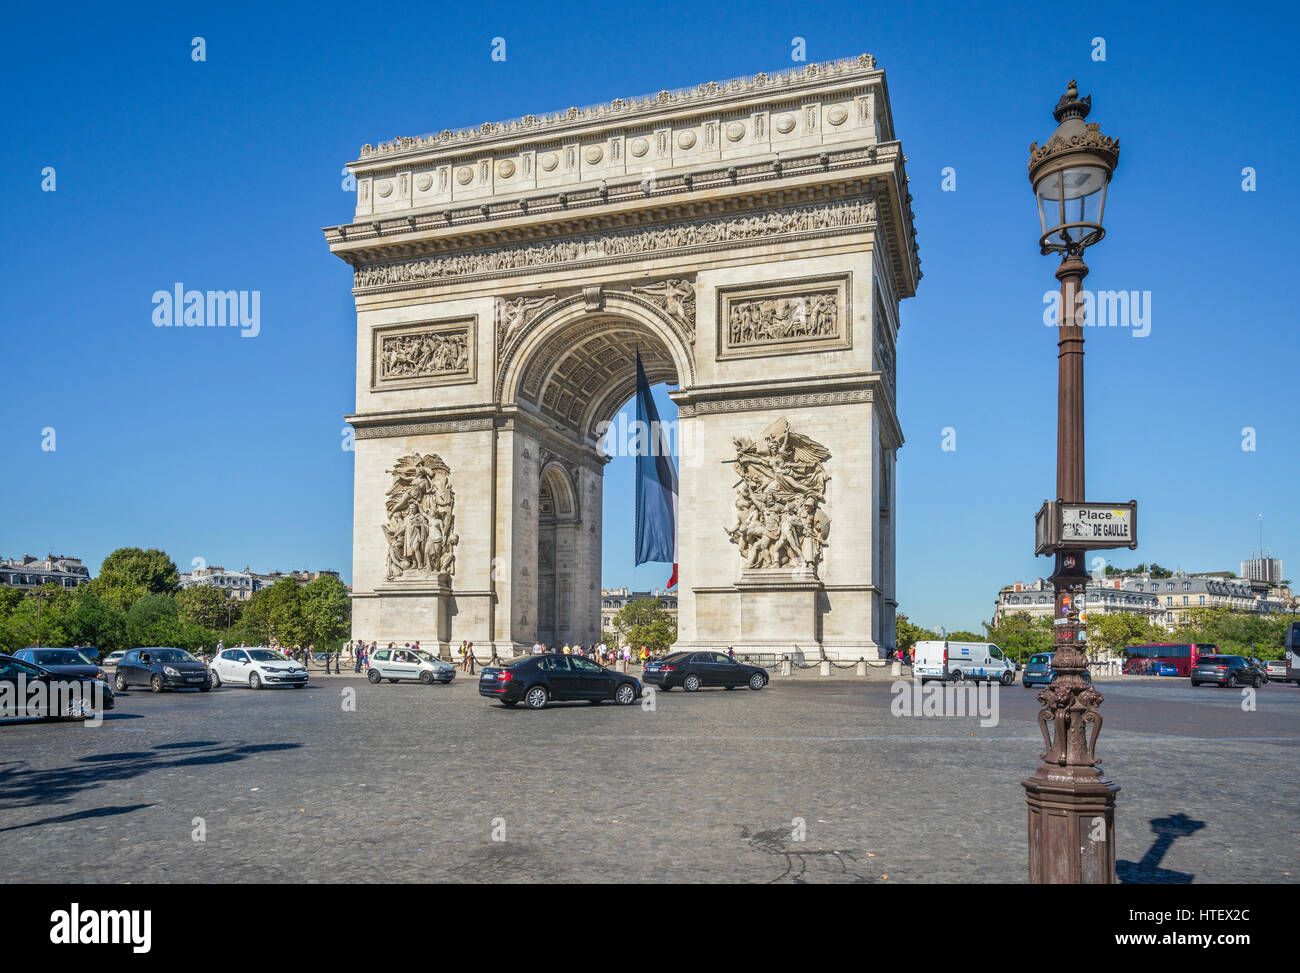 France, Ile-de-France, Paris, Arc de Triomphe de l'étoile sur la Place Charles de Gaulle Banque D'Images